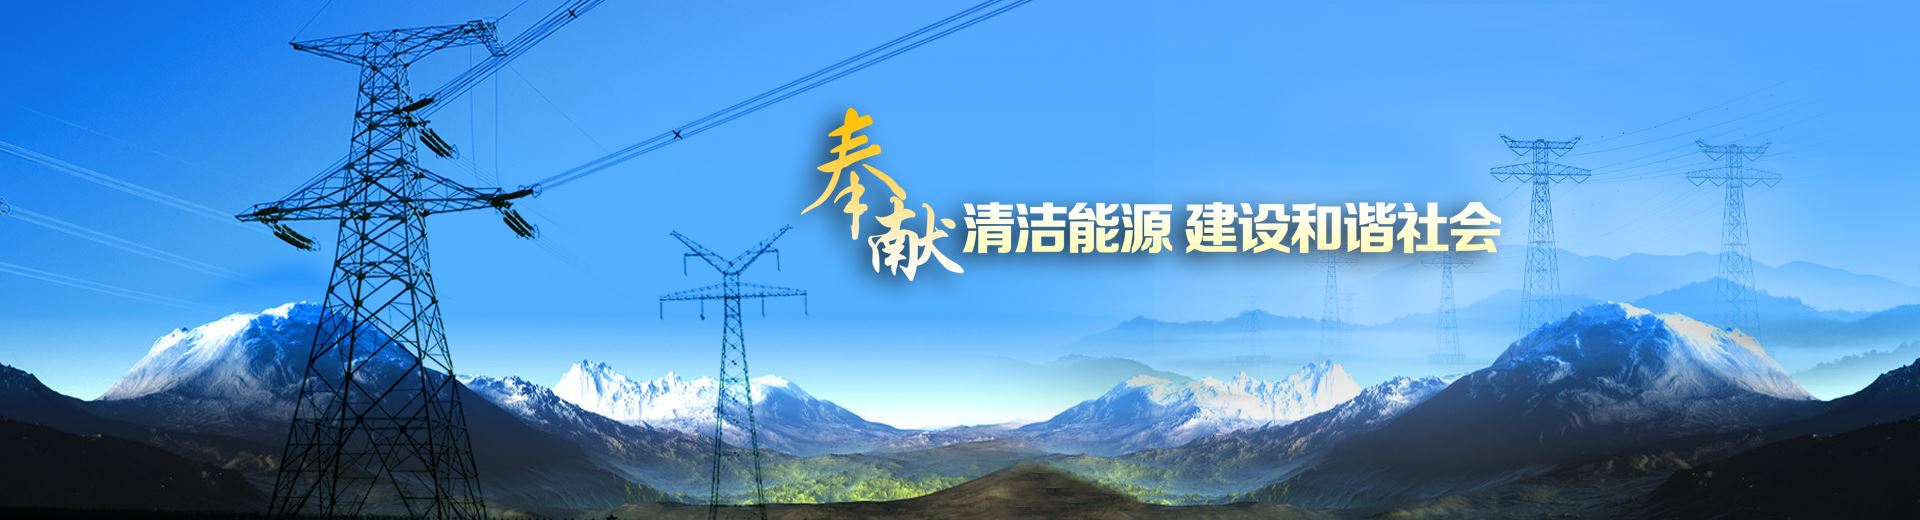 贵州黔勃电力集团